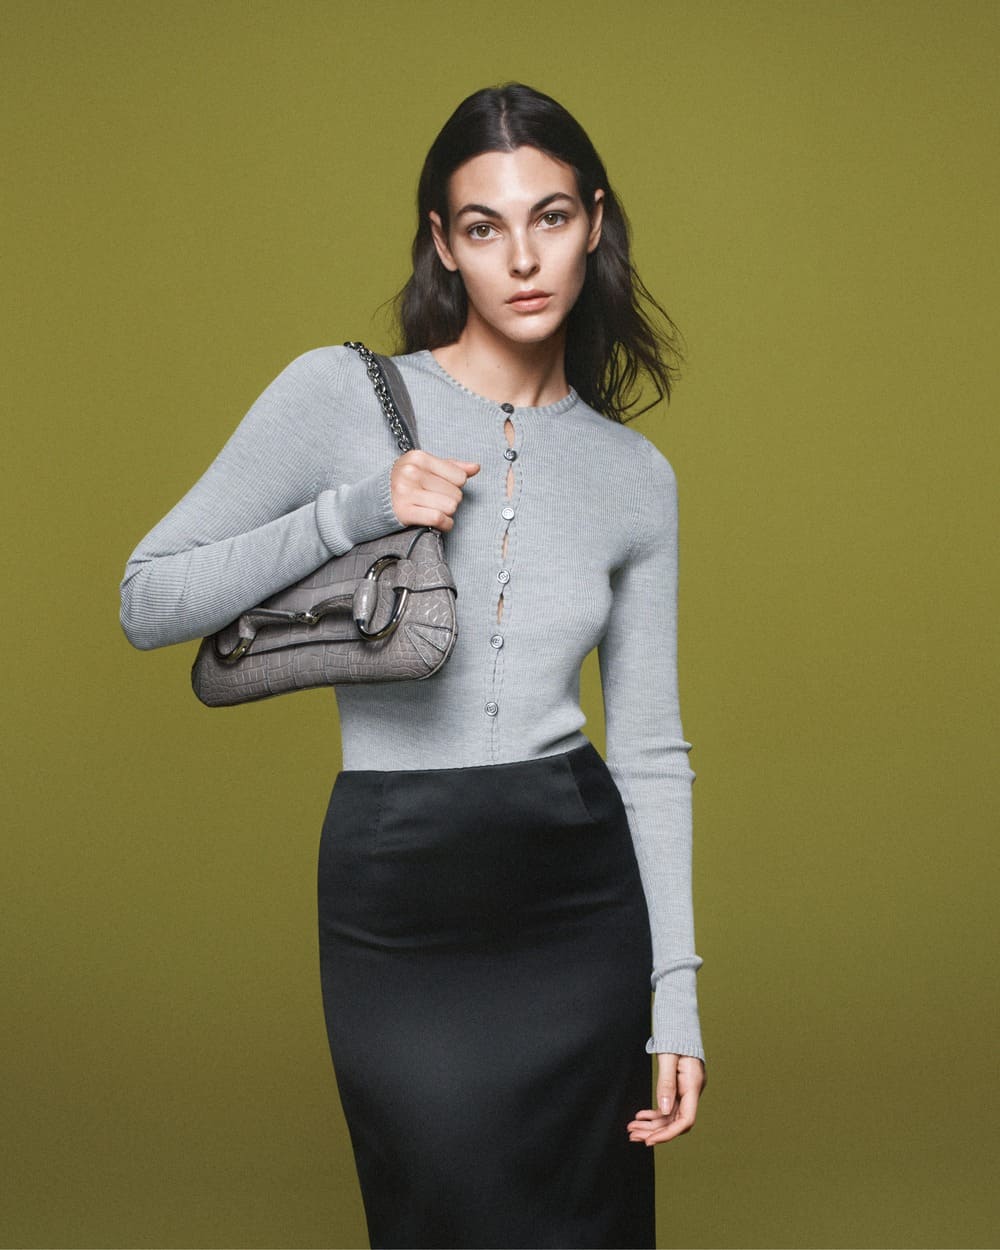 Vittoria Ceretti cùng chiếc túi mang tính biểu tượng của Gucci. Ảnh: Gucci